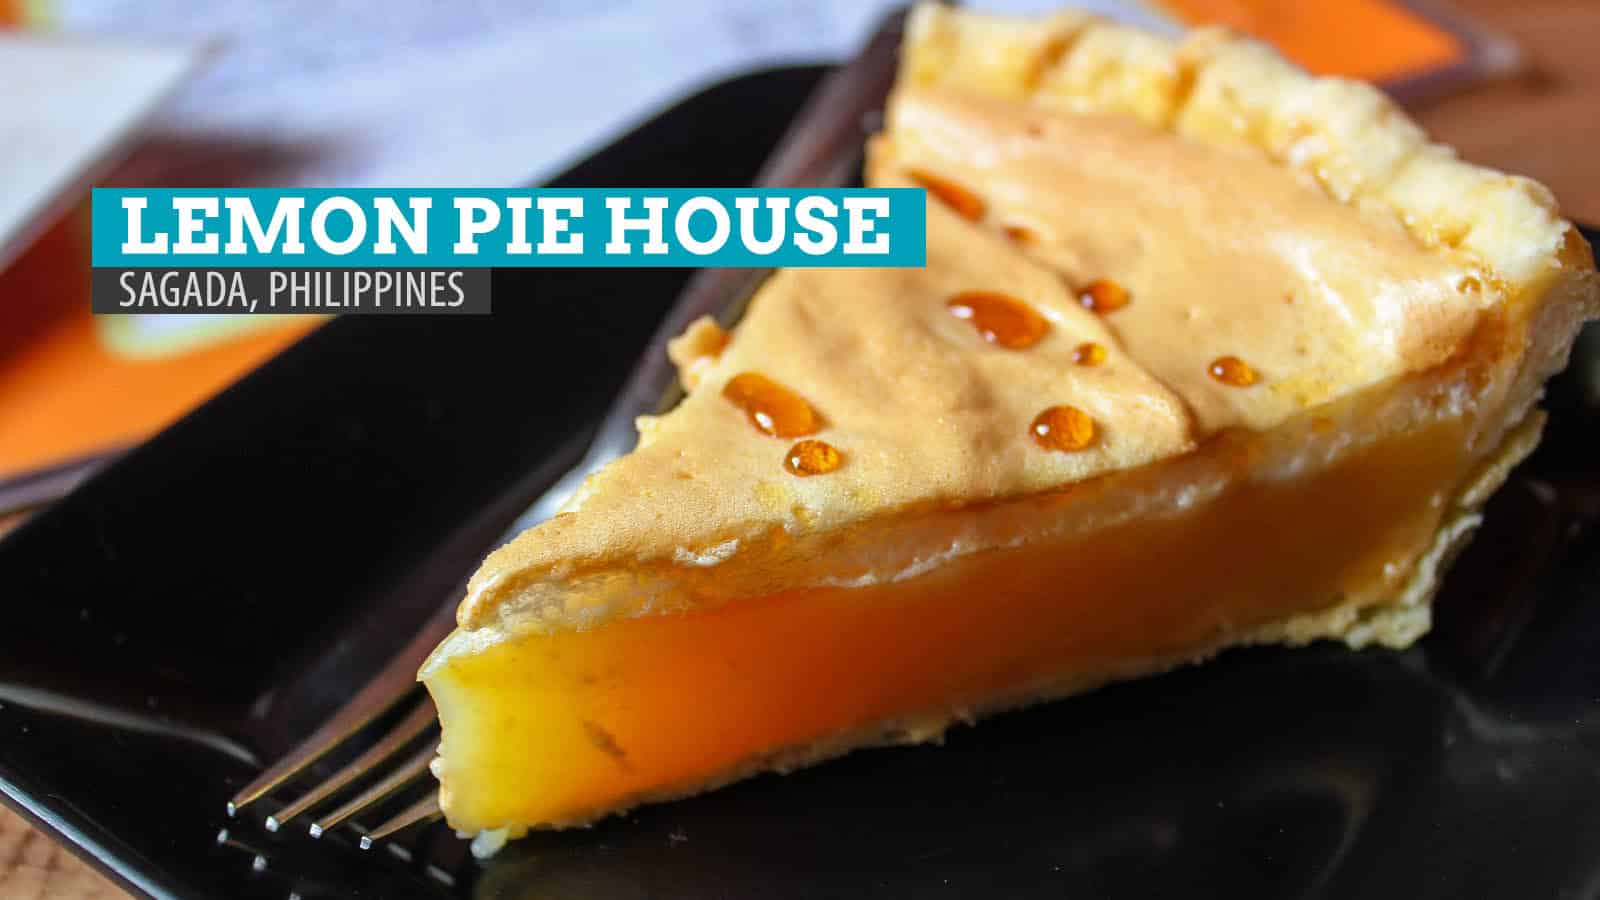 柠檬派之家:菲律宾佐加达的美食之家